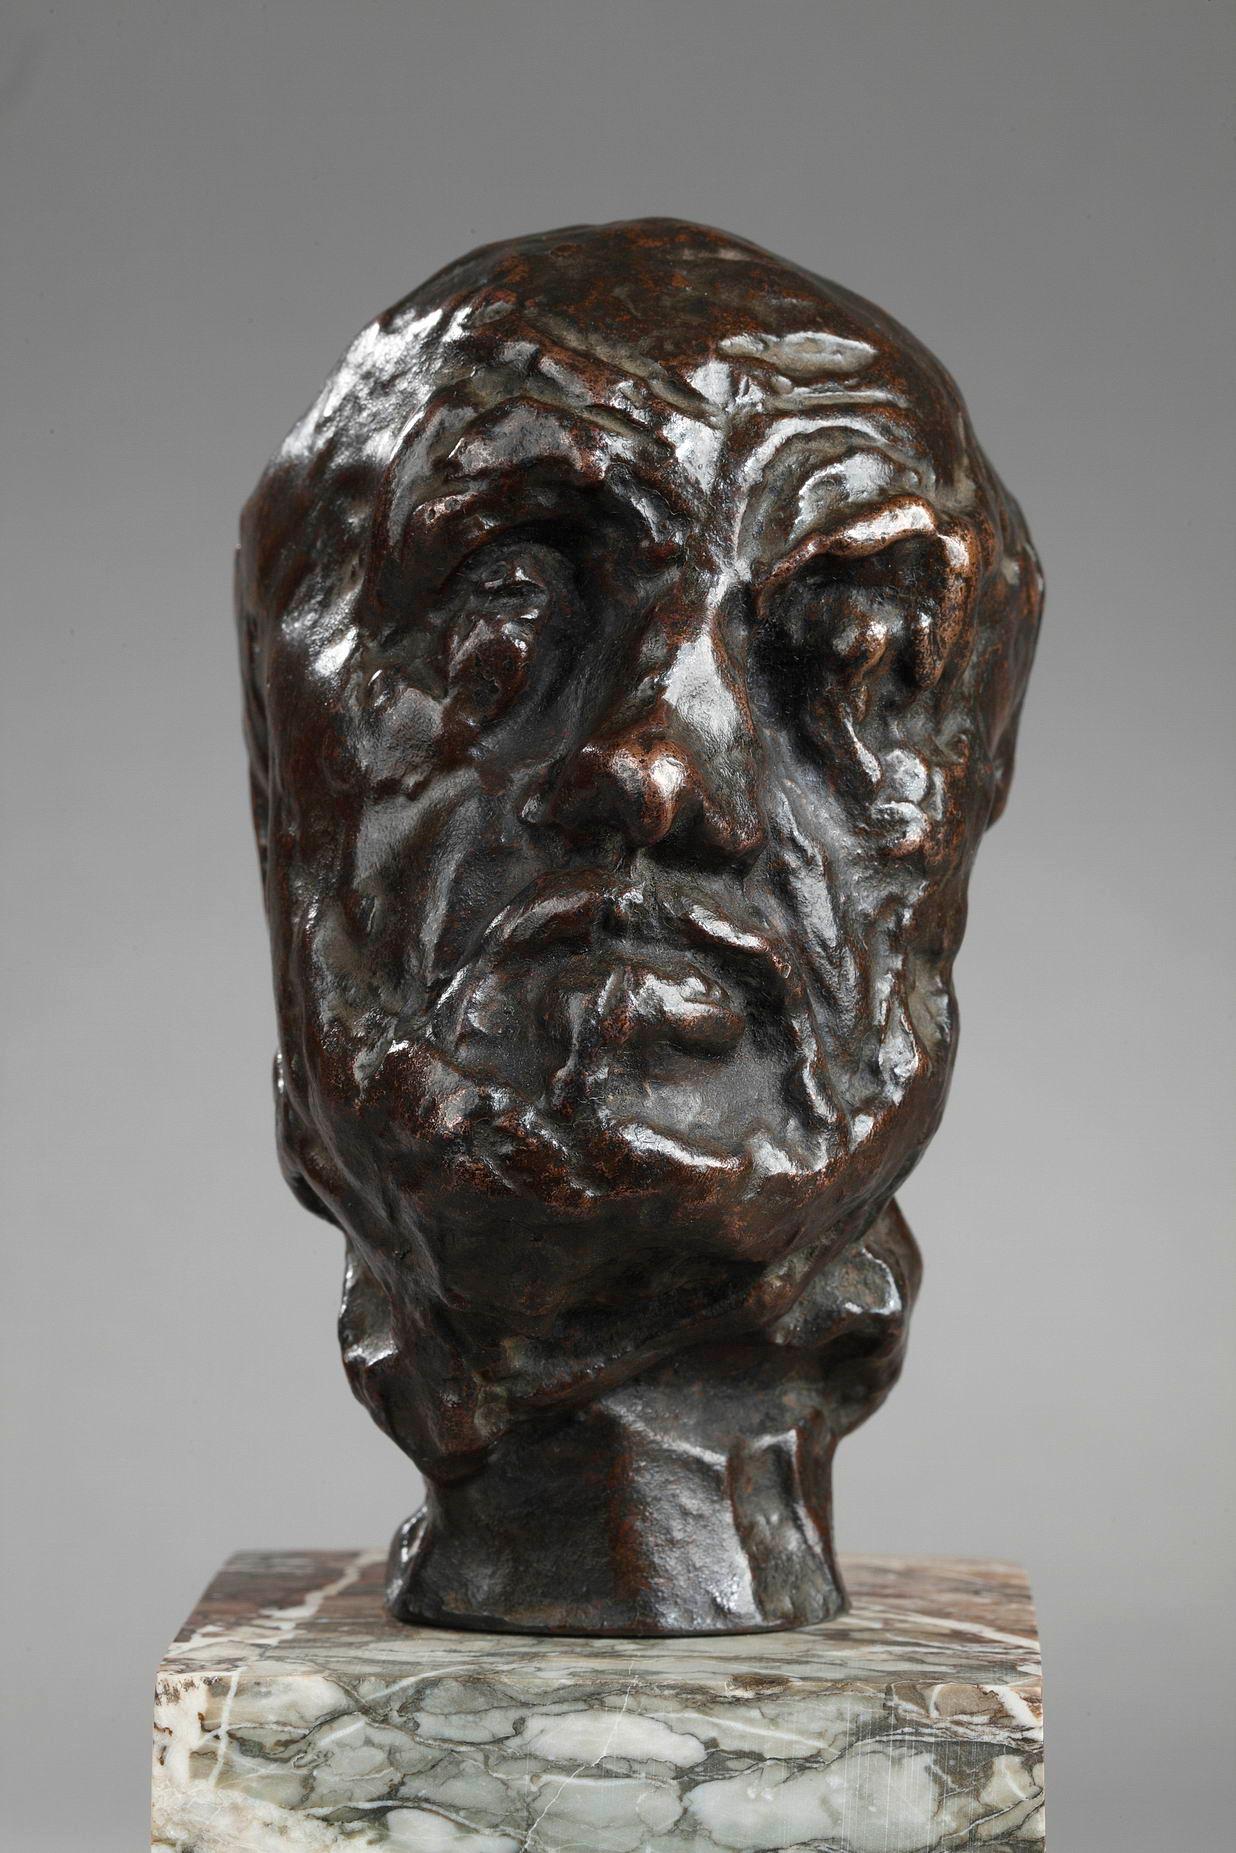 Petite tête de l'Homme au nez cassé - Sculpture de Auguste Rodin